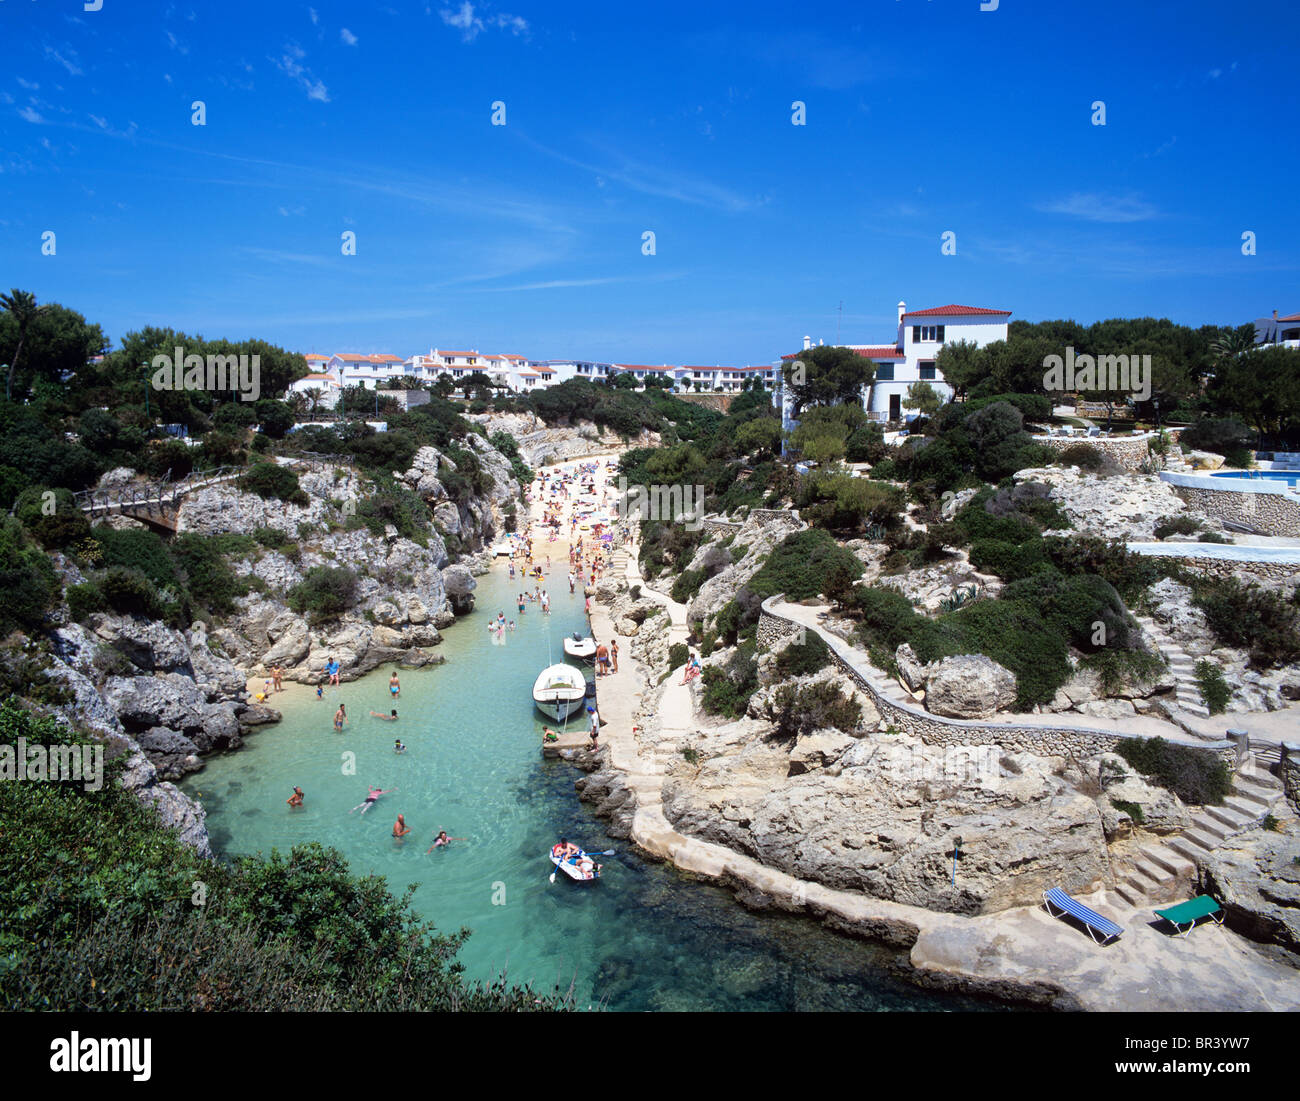 Menorca - Cala en el pintoresco pueblo de Cala'n Forcat situado en la costa oeste cerca de Ciudadela. Foto de stock